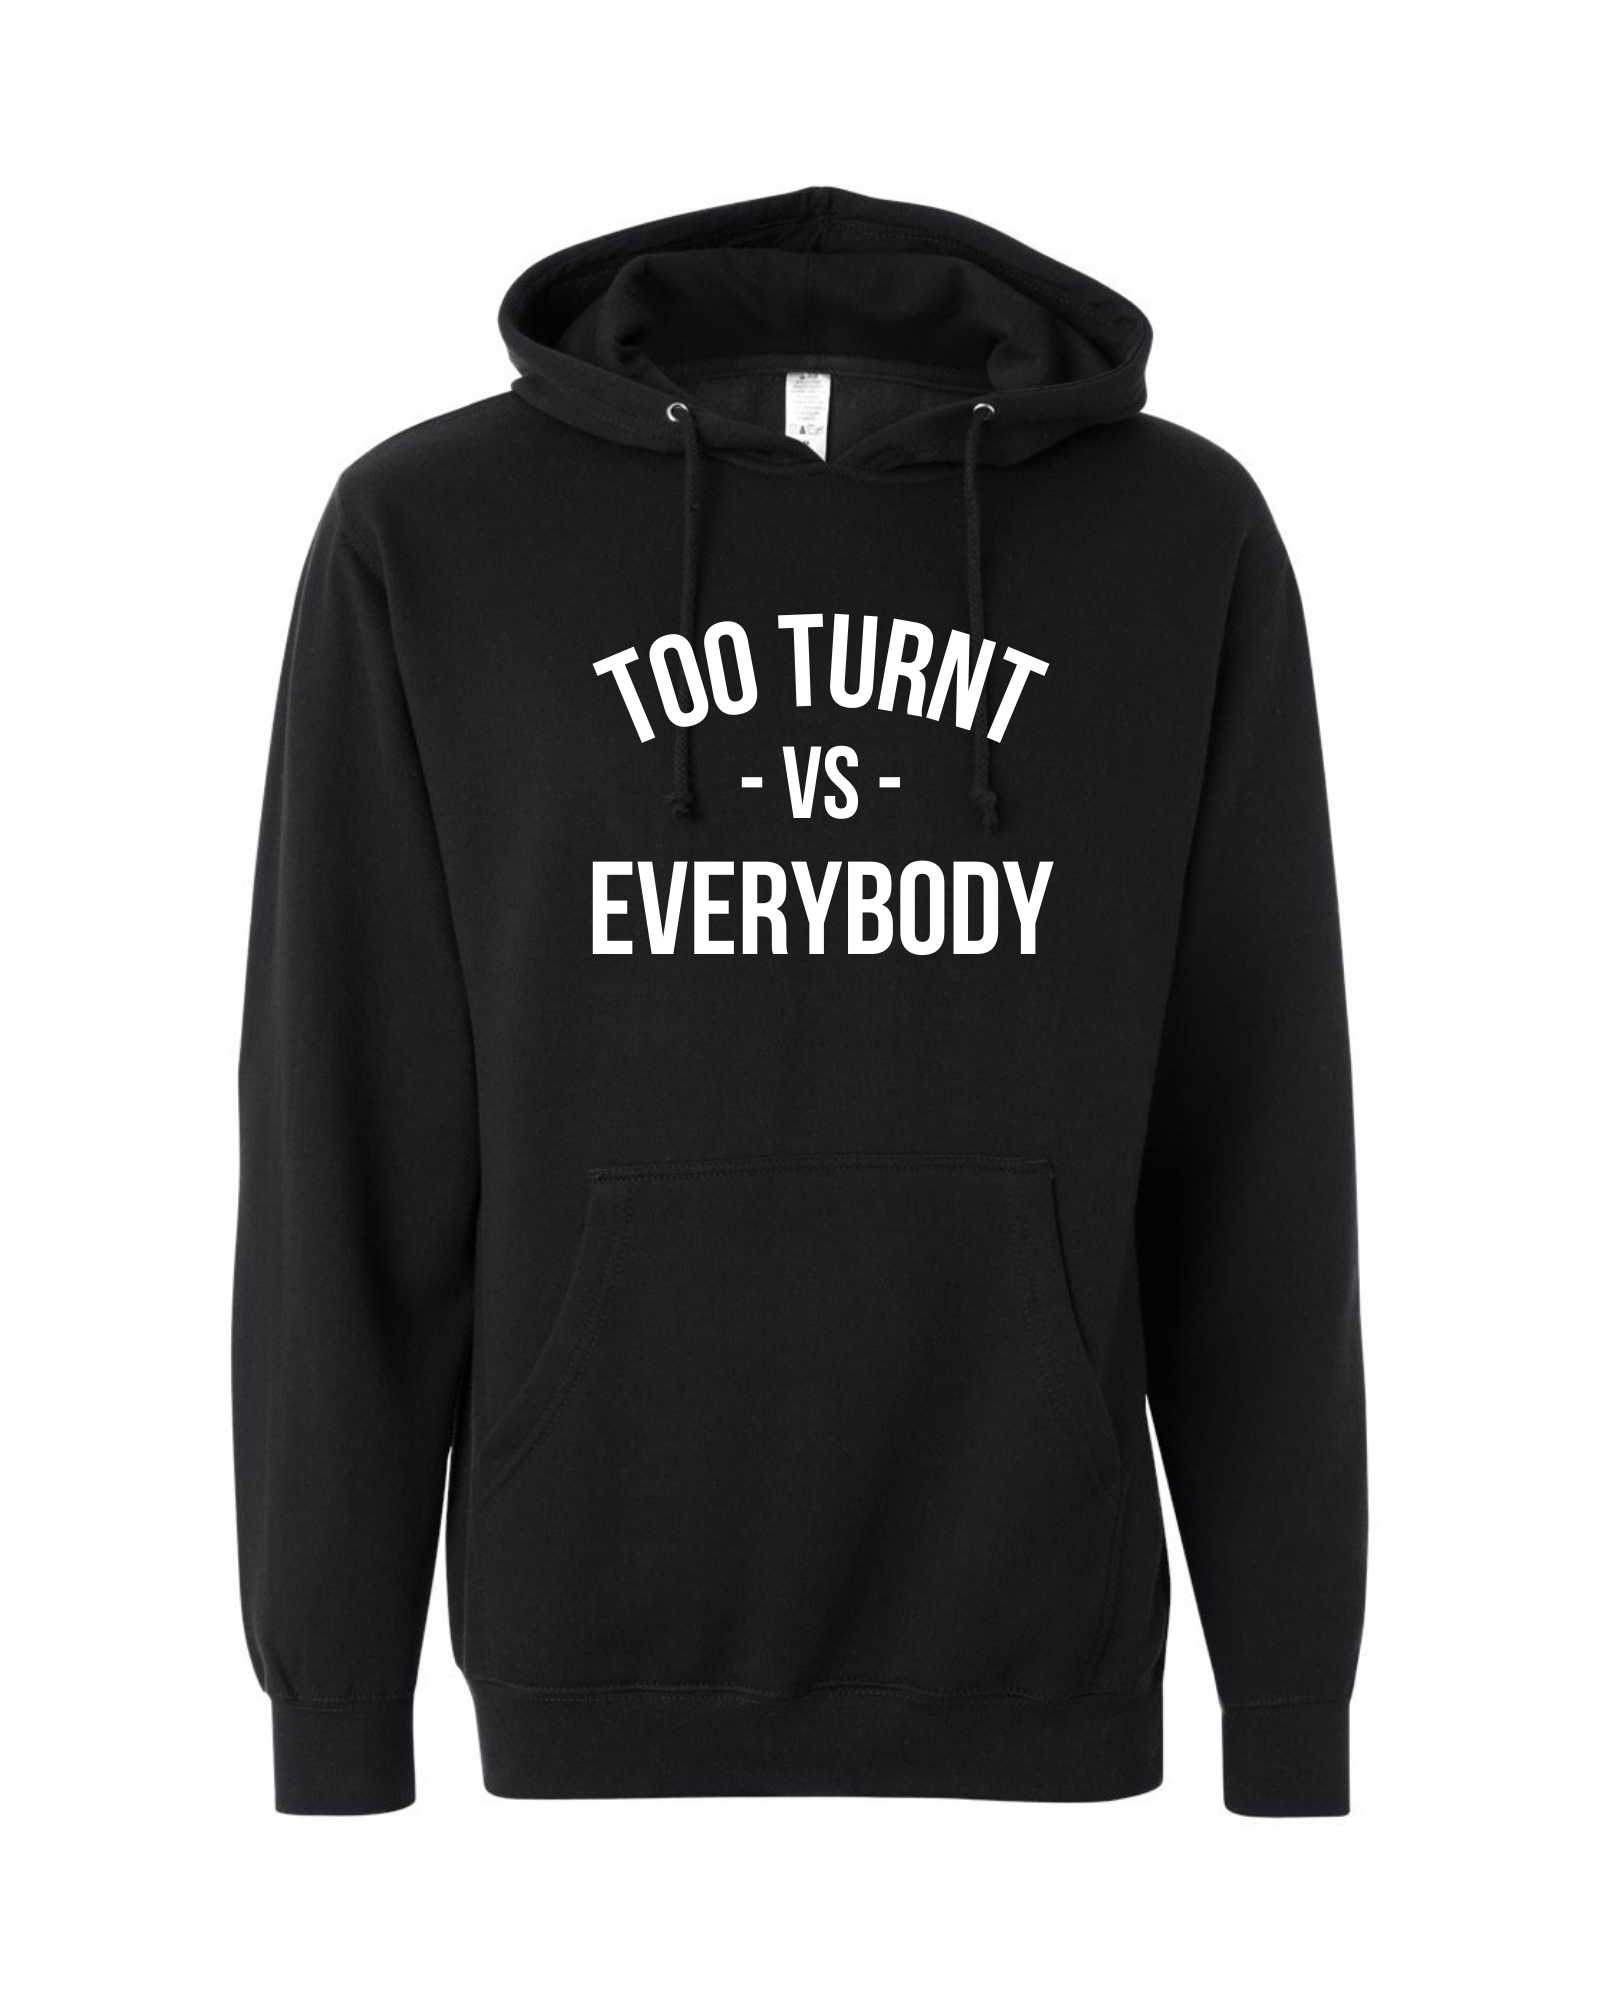 Turnt vs. Everybody Hoodie